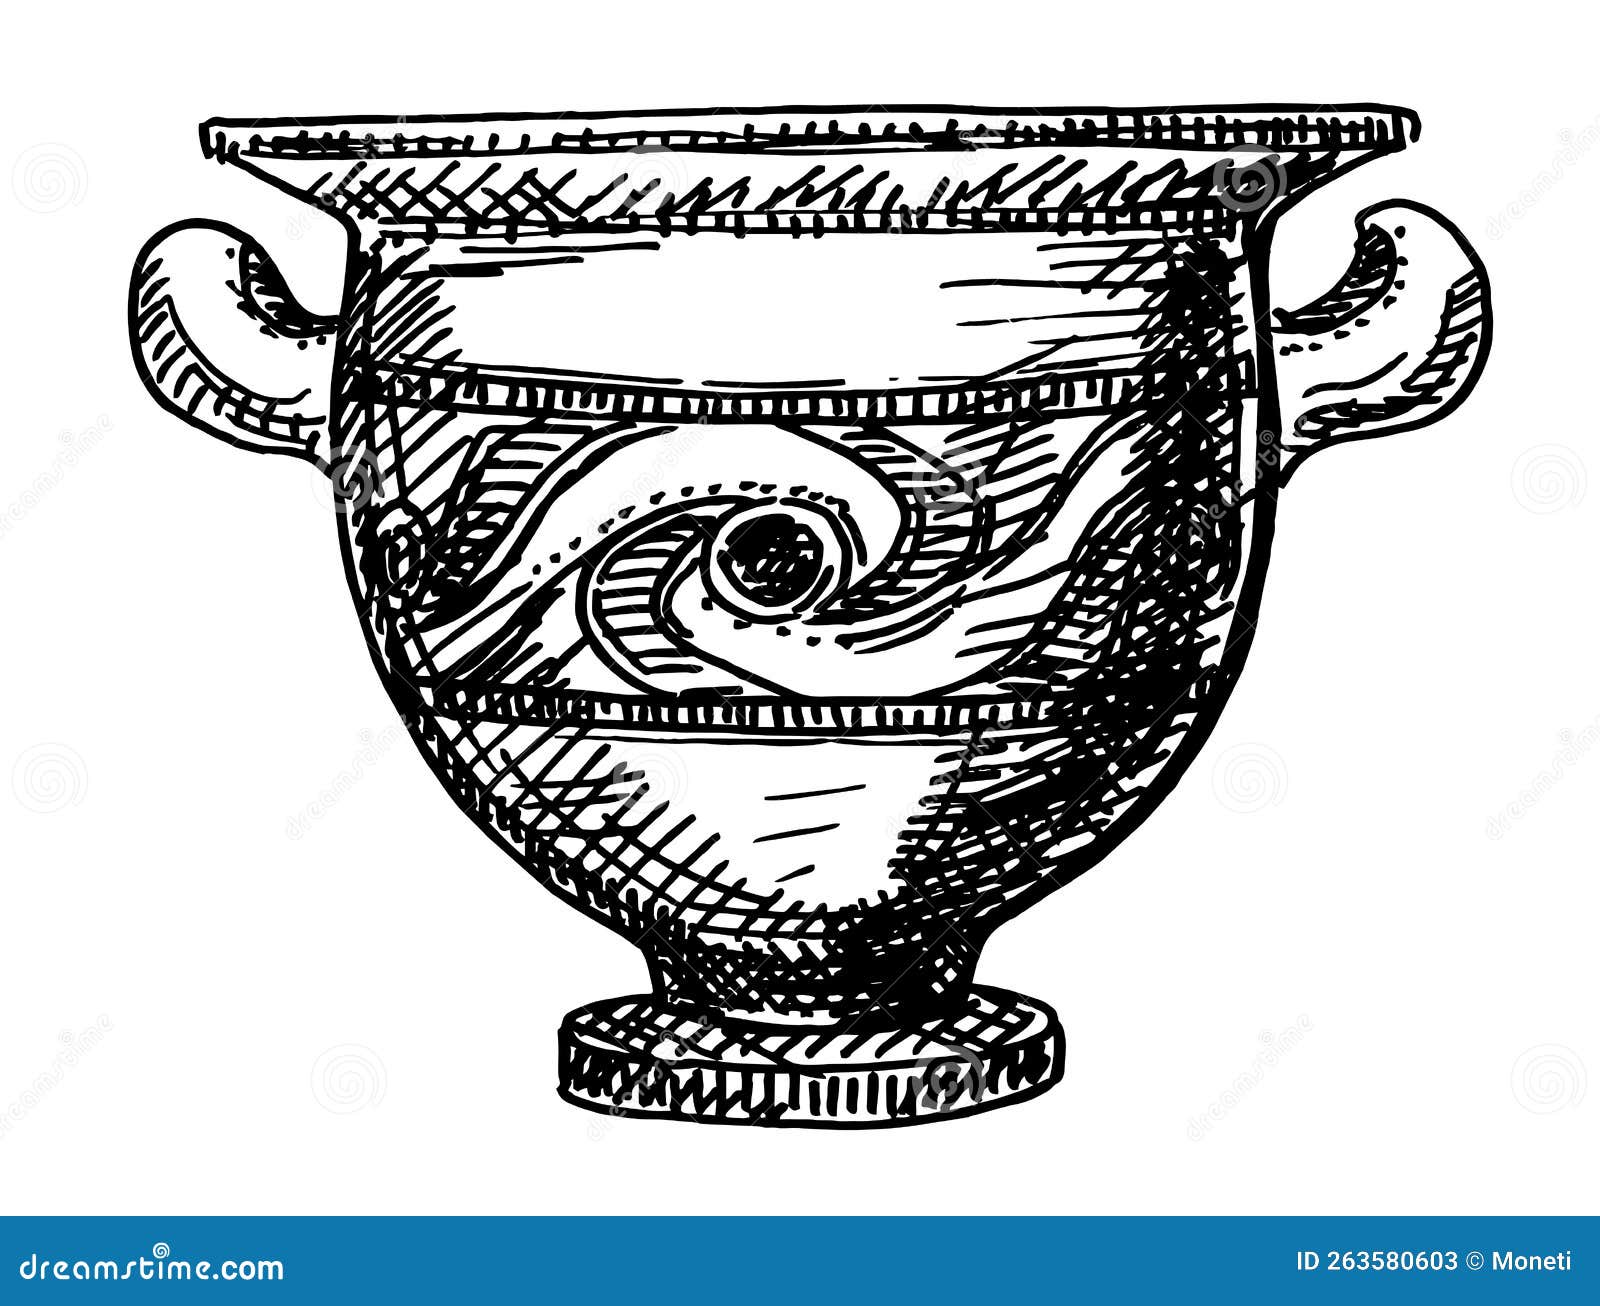 希腊考古发掘的陶瓶. 古希腊壶陶瓷向量例证. 插画包括有草图, 瓶子